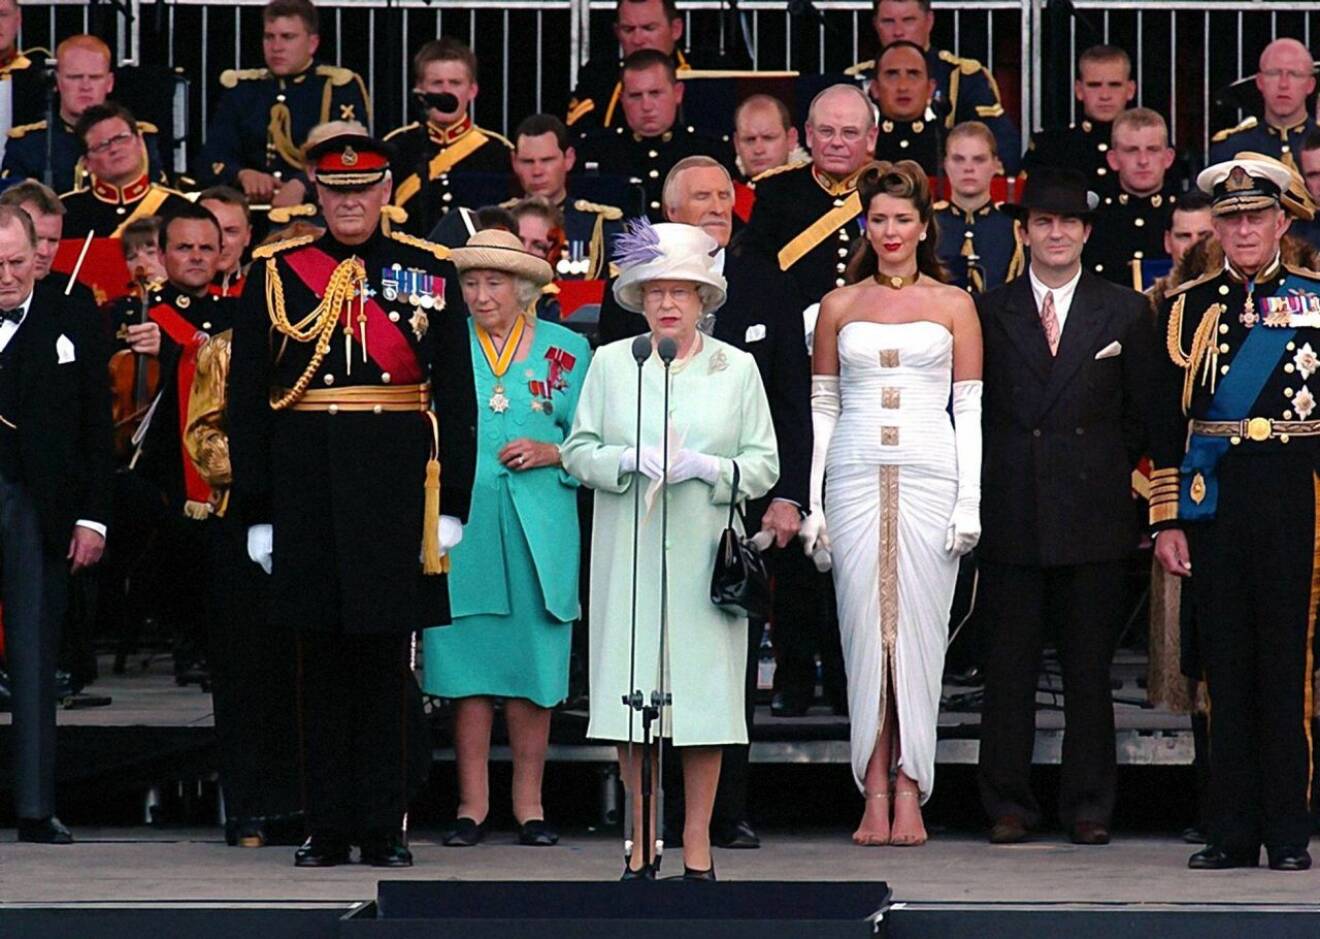 Drottning Elizabeth, i mitten, med Vera Lynn i grön klänning till vänster, fotograferade 2005.